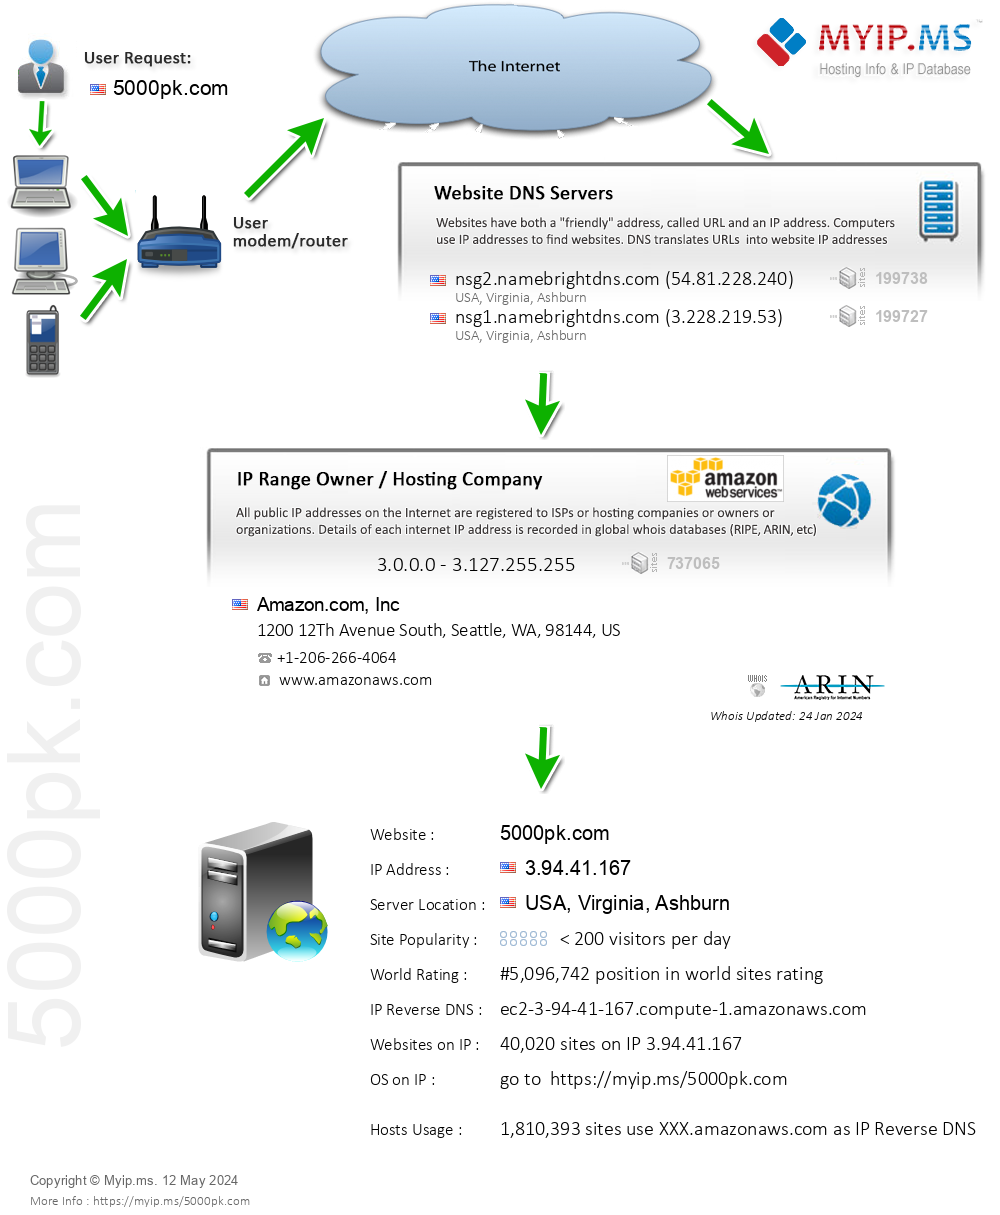 5000pk.com - Website Hosting Visual IP Diagram